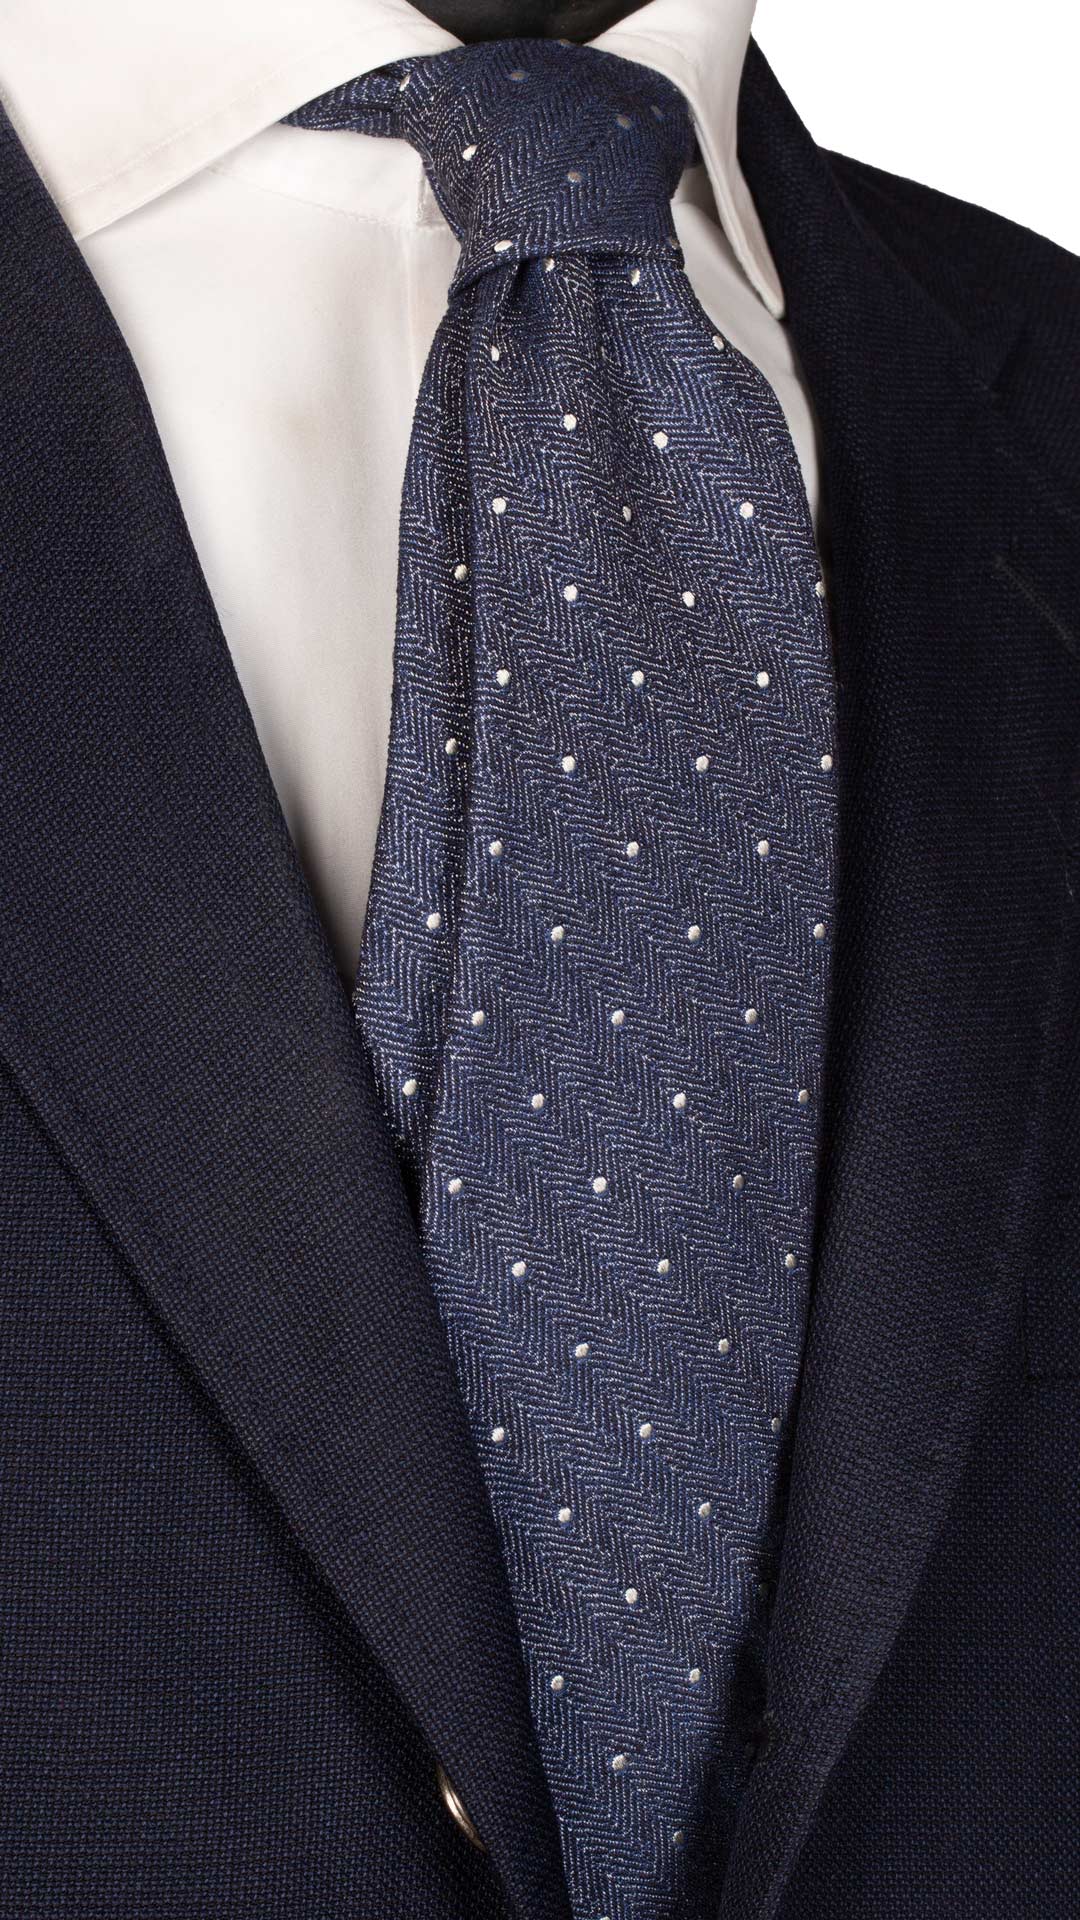 Cravatta da Cerimonia di Seta Blu Lisca di Pesce Pois Grigio Chiaro Made in Italy Graffeo Cravatte